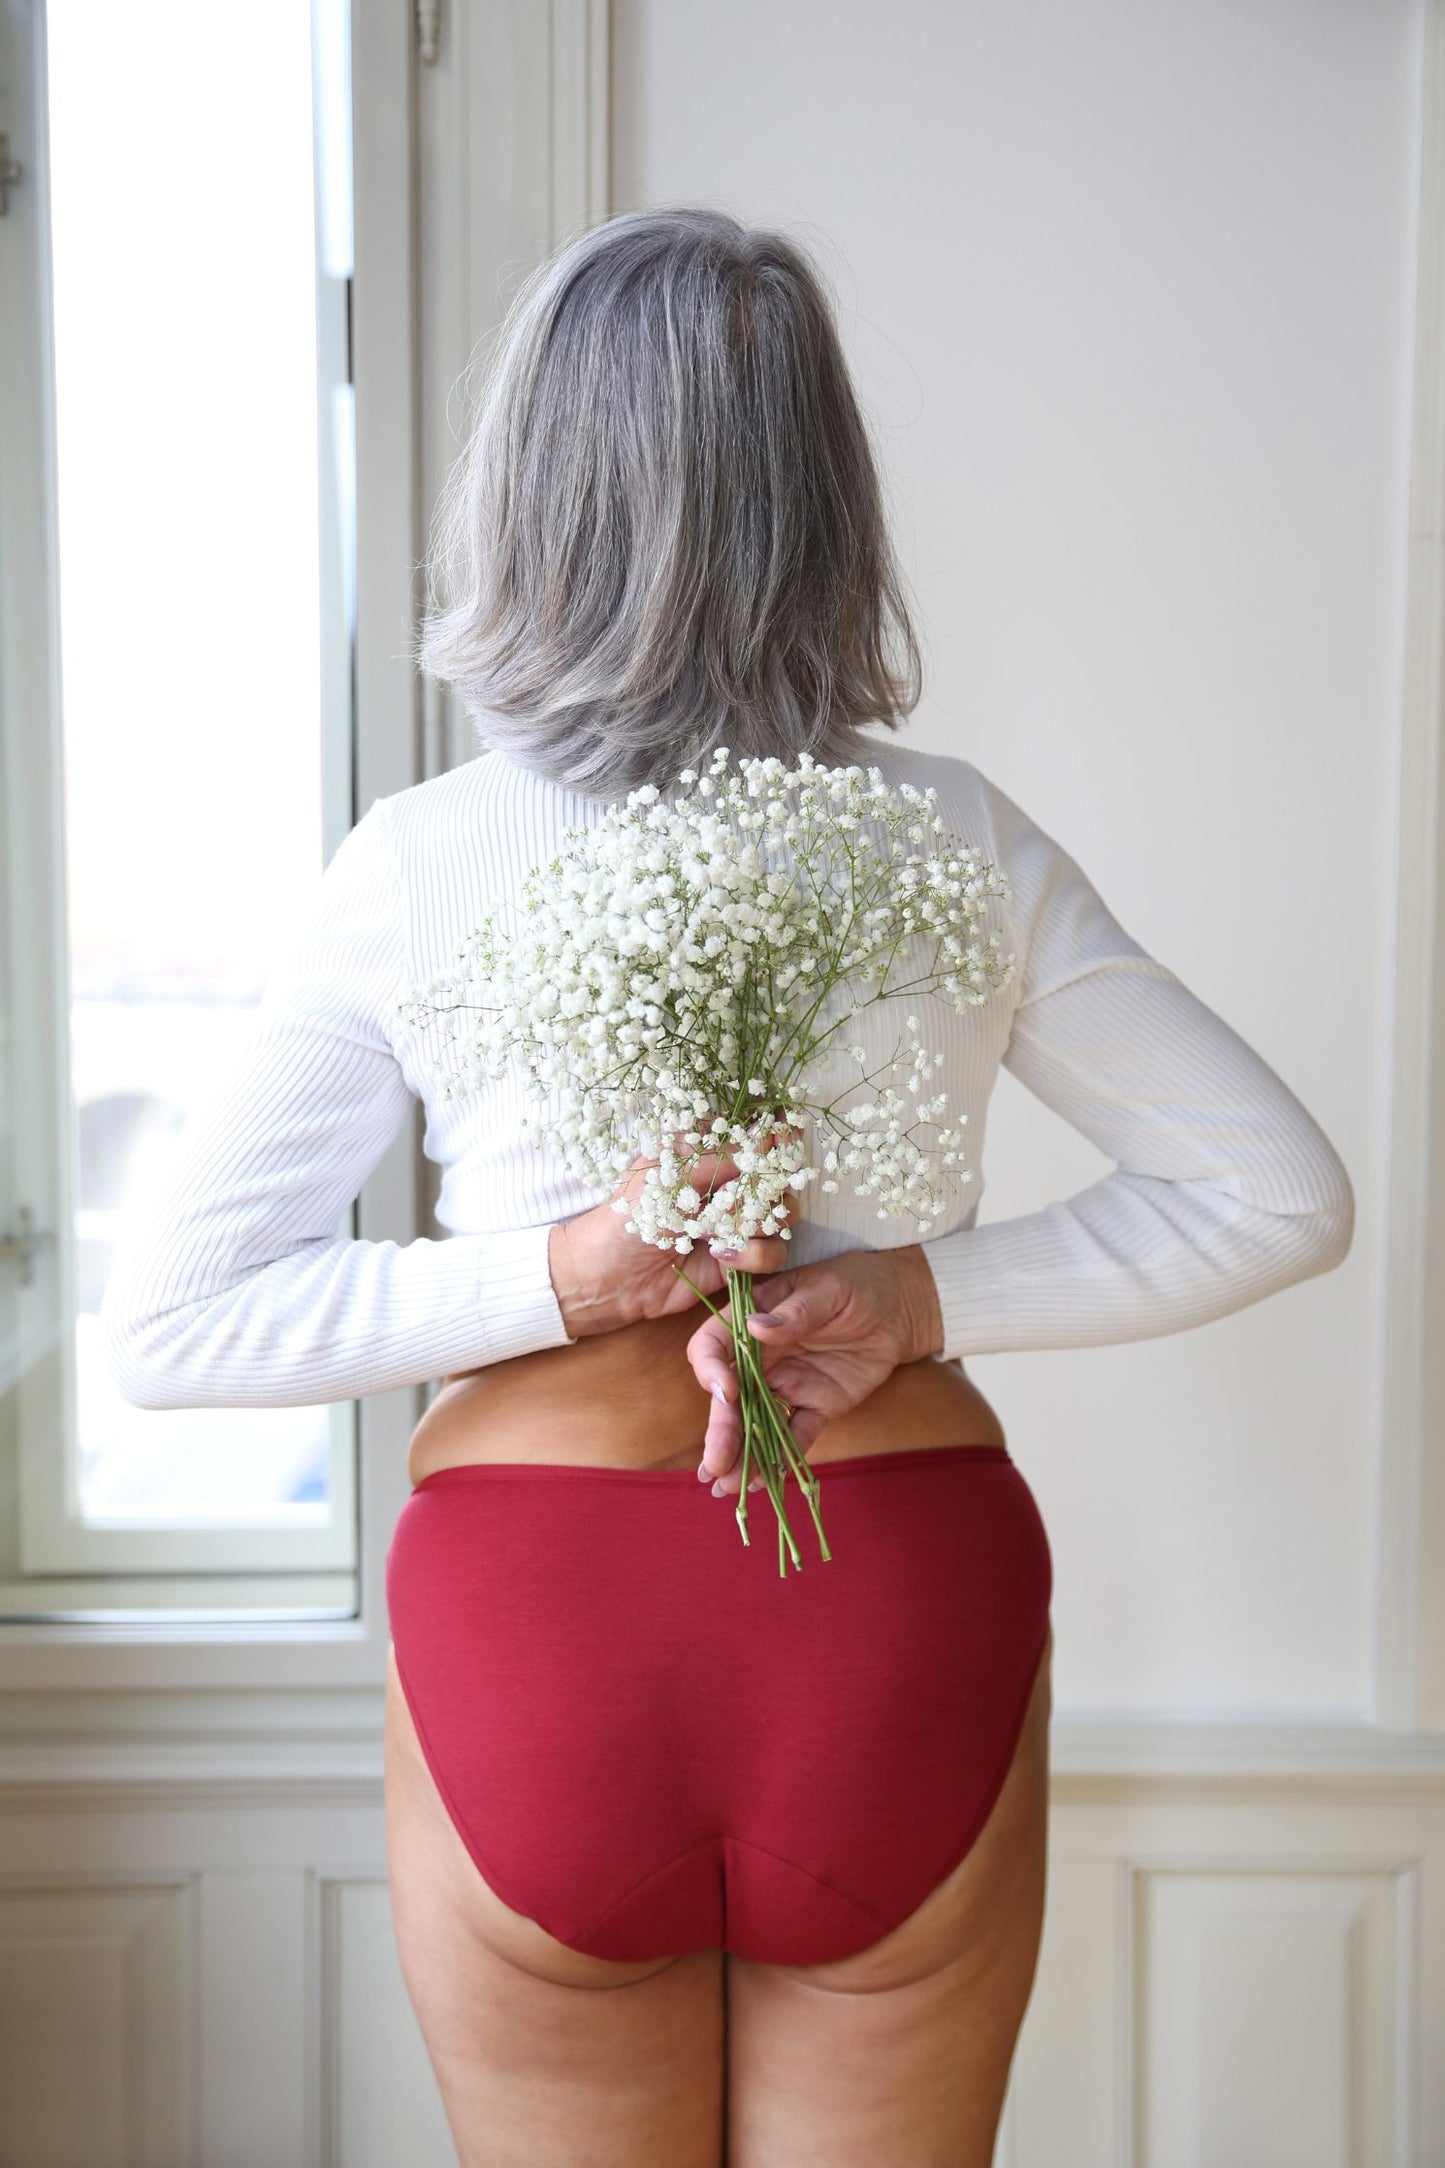 pohled zezadu na modelku, která v rukou drží bílé květiny s drobnými kvítky - na sobě má bordó merino kalhotky klasického střihu